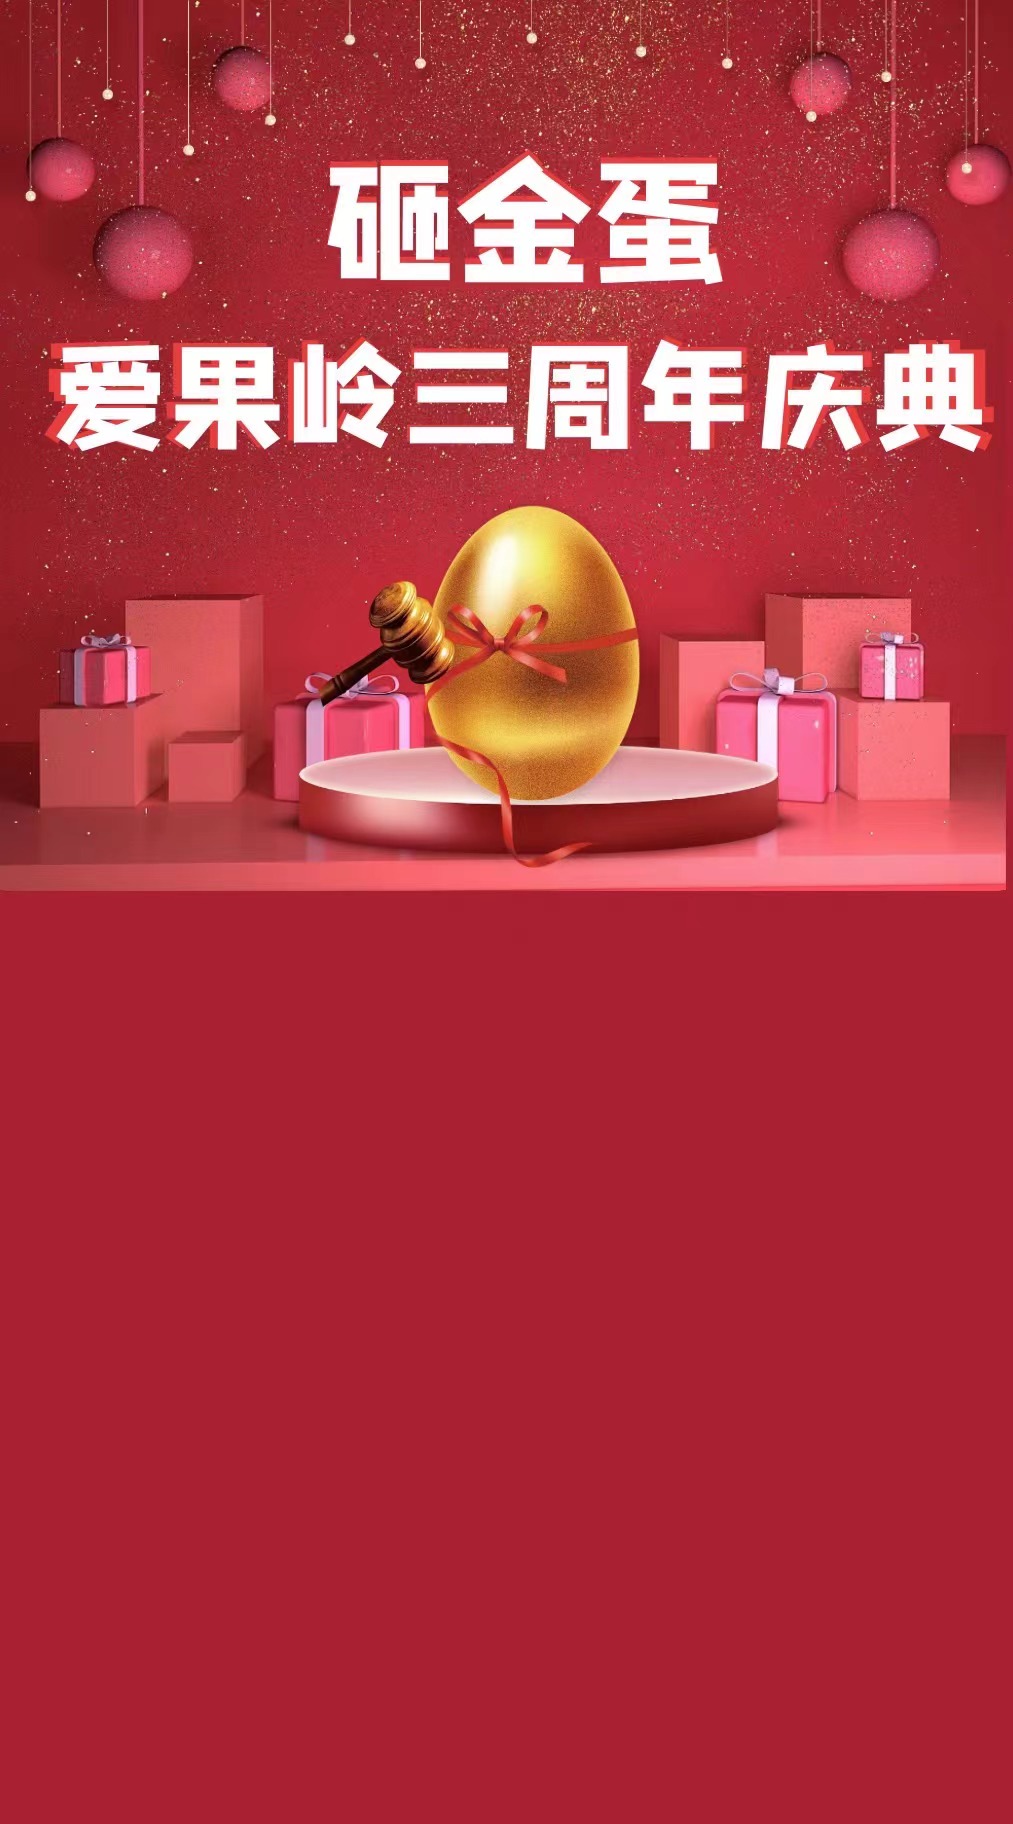 爱果岭三周年庆典-砸金蛋活动